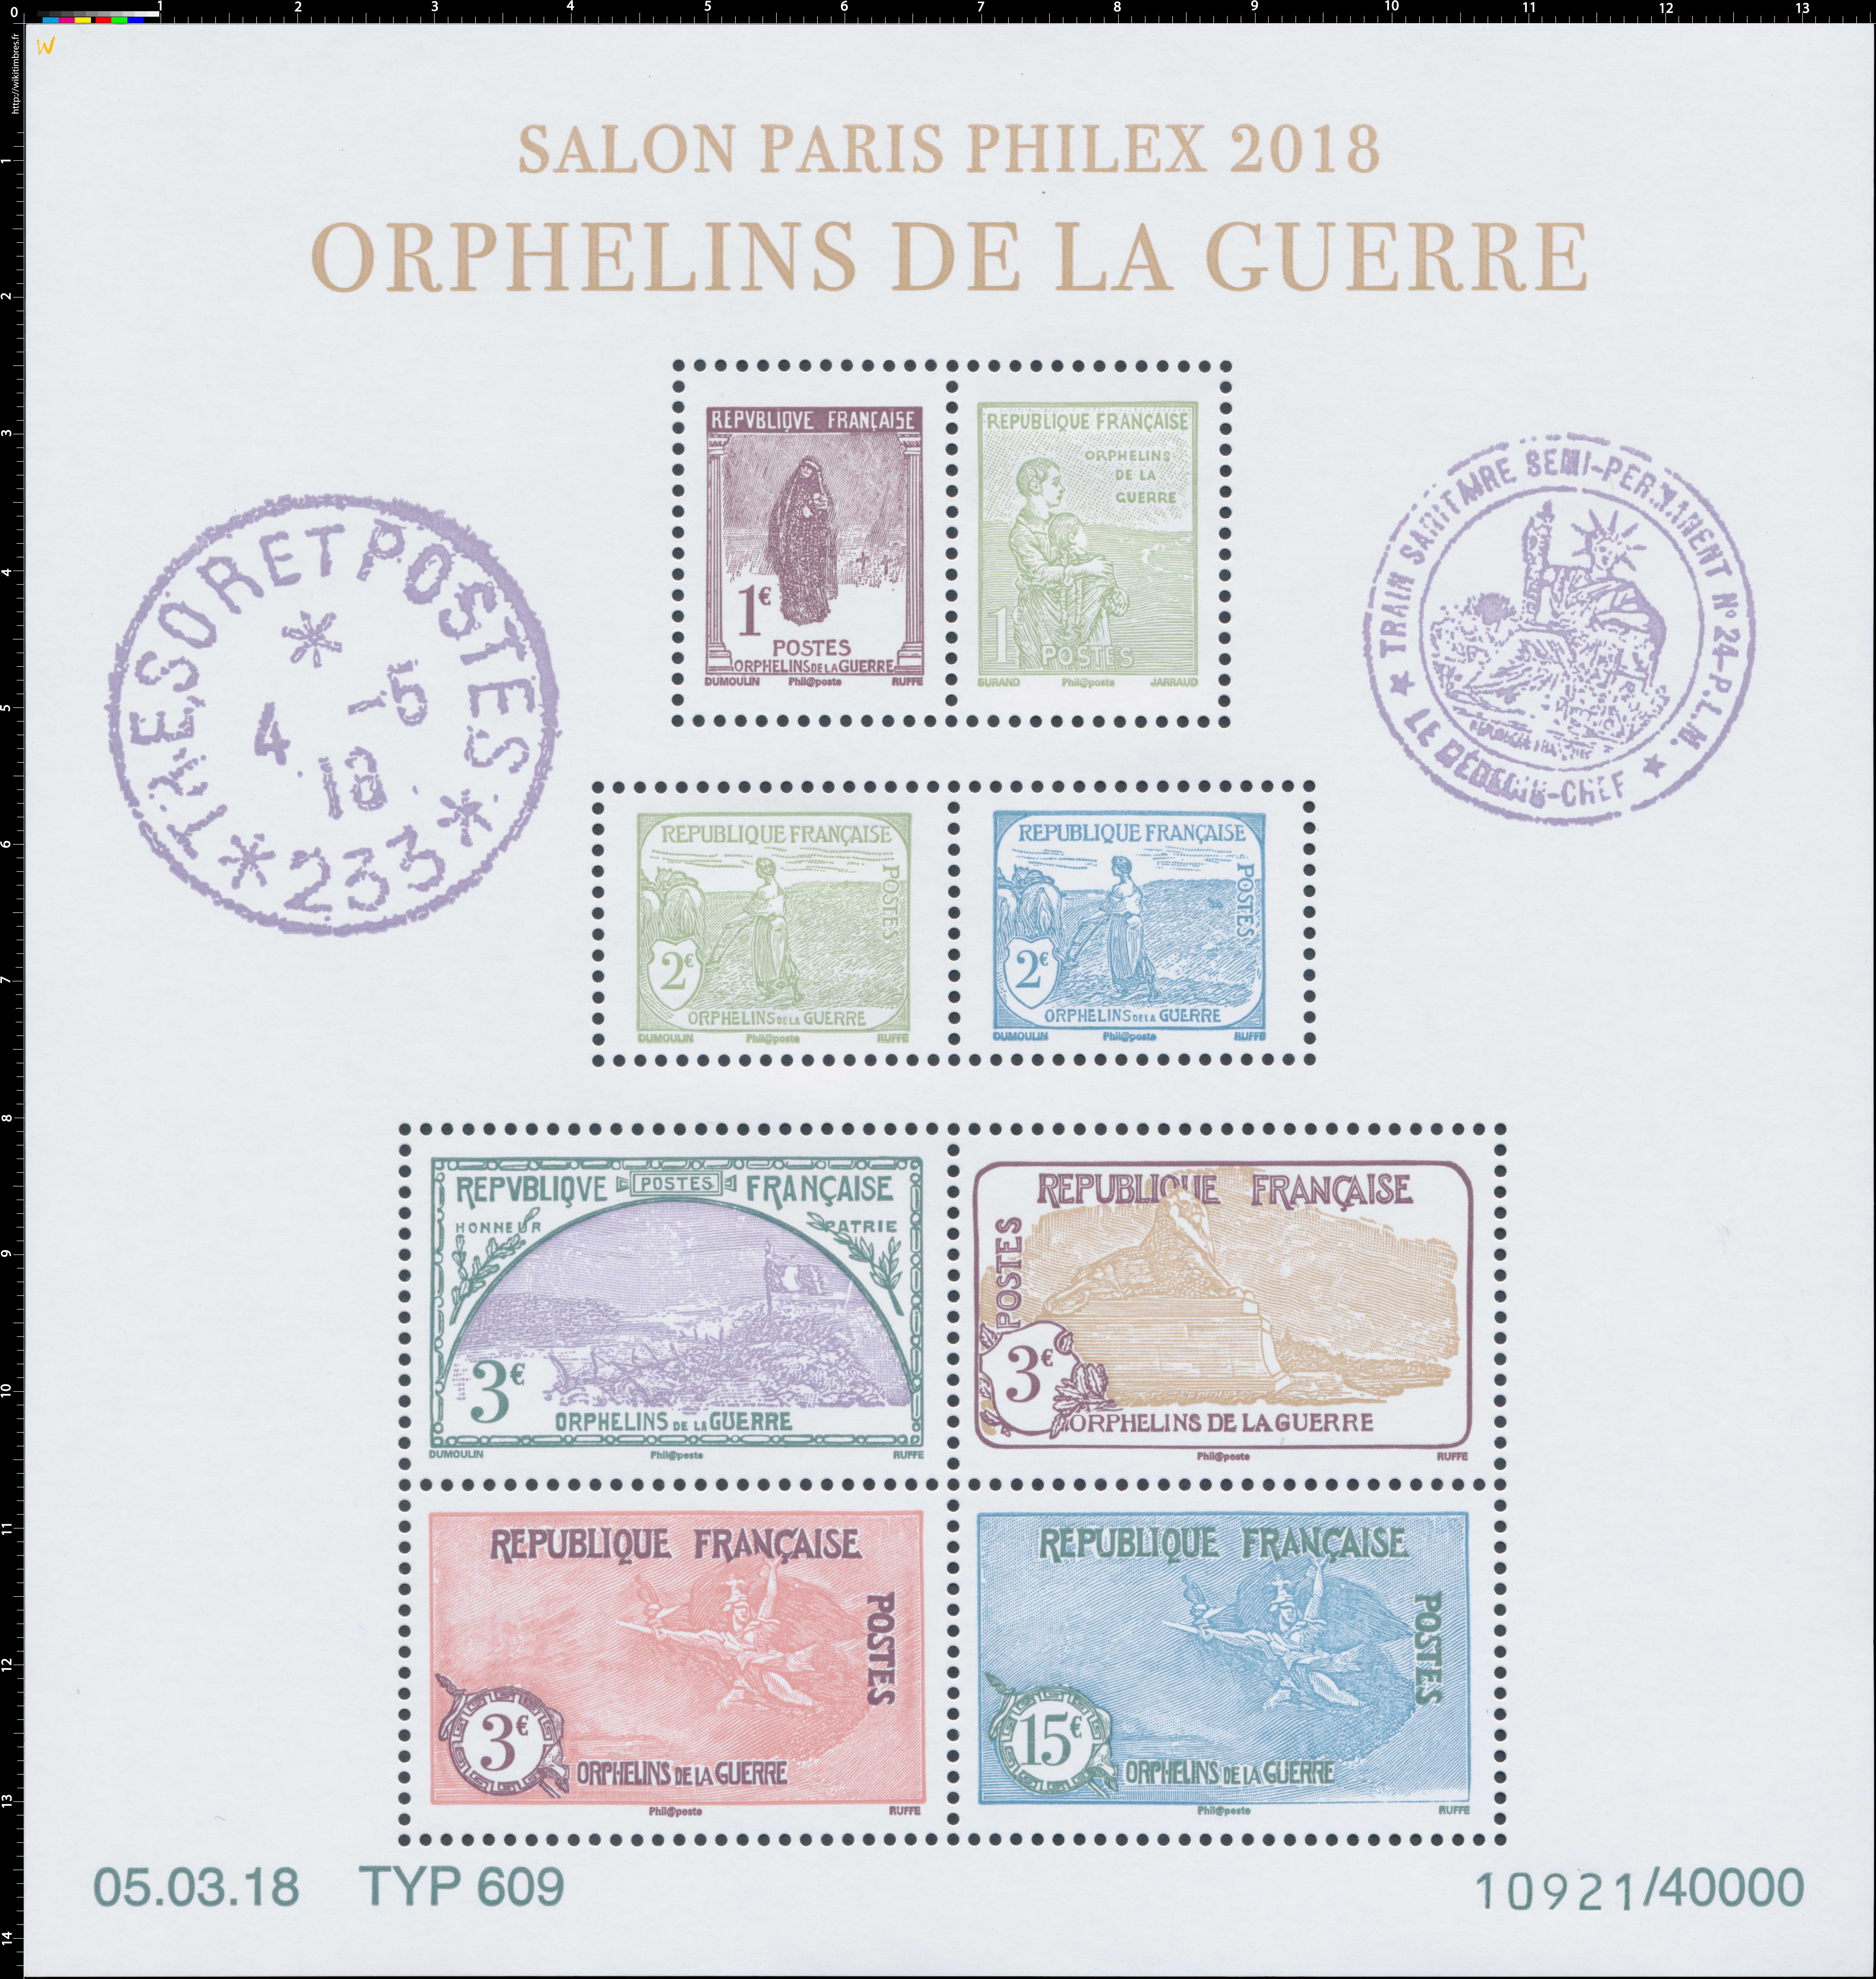 2018 SALON PARIS PHILEX  - ORPHELINS DE LA GUERRE